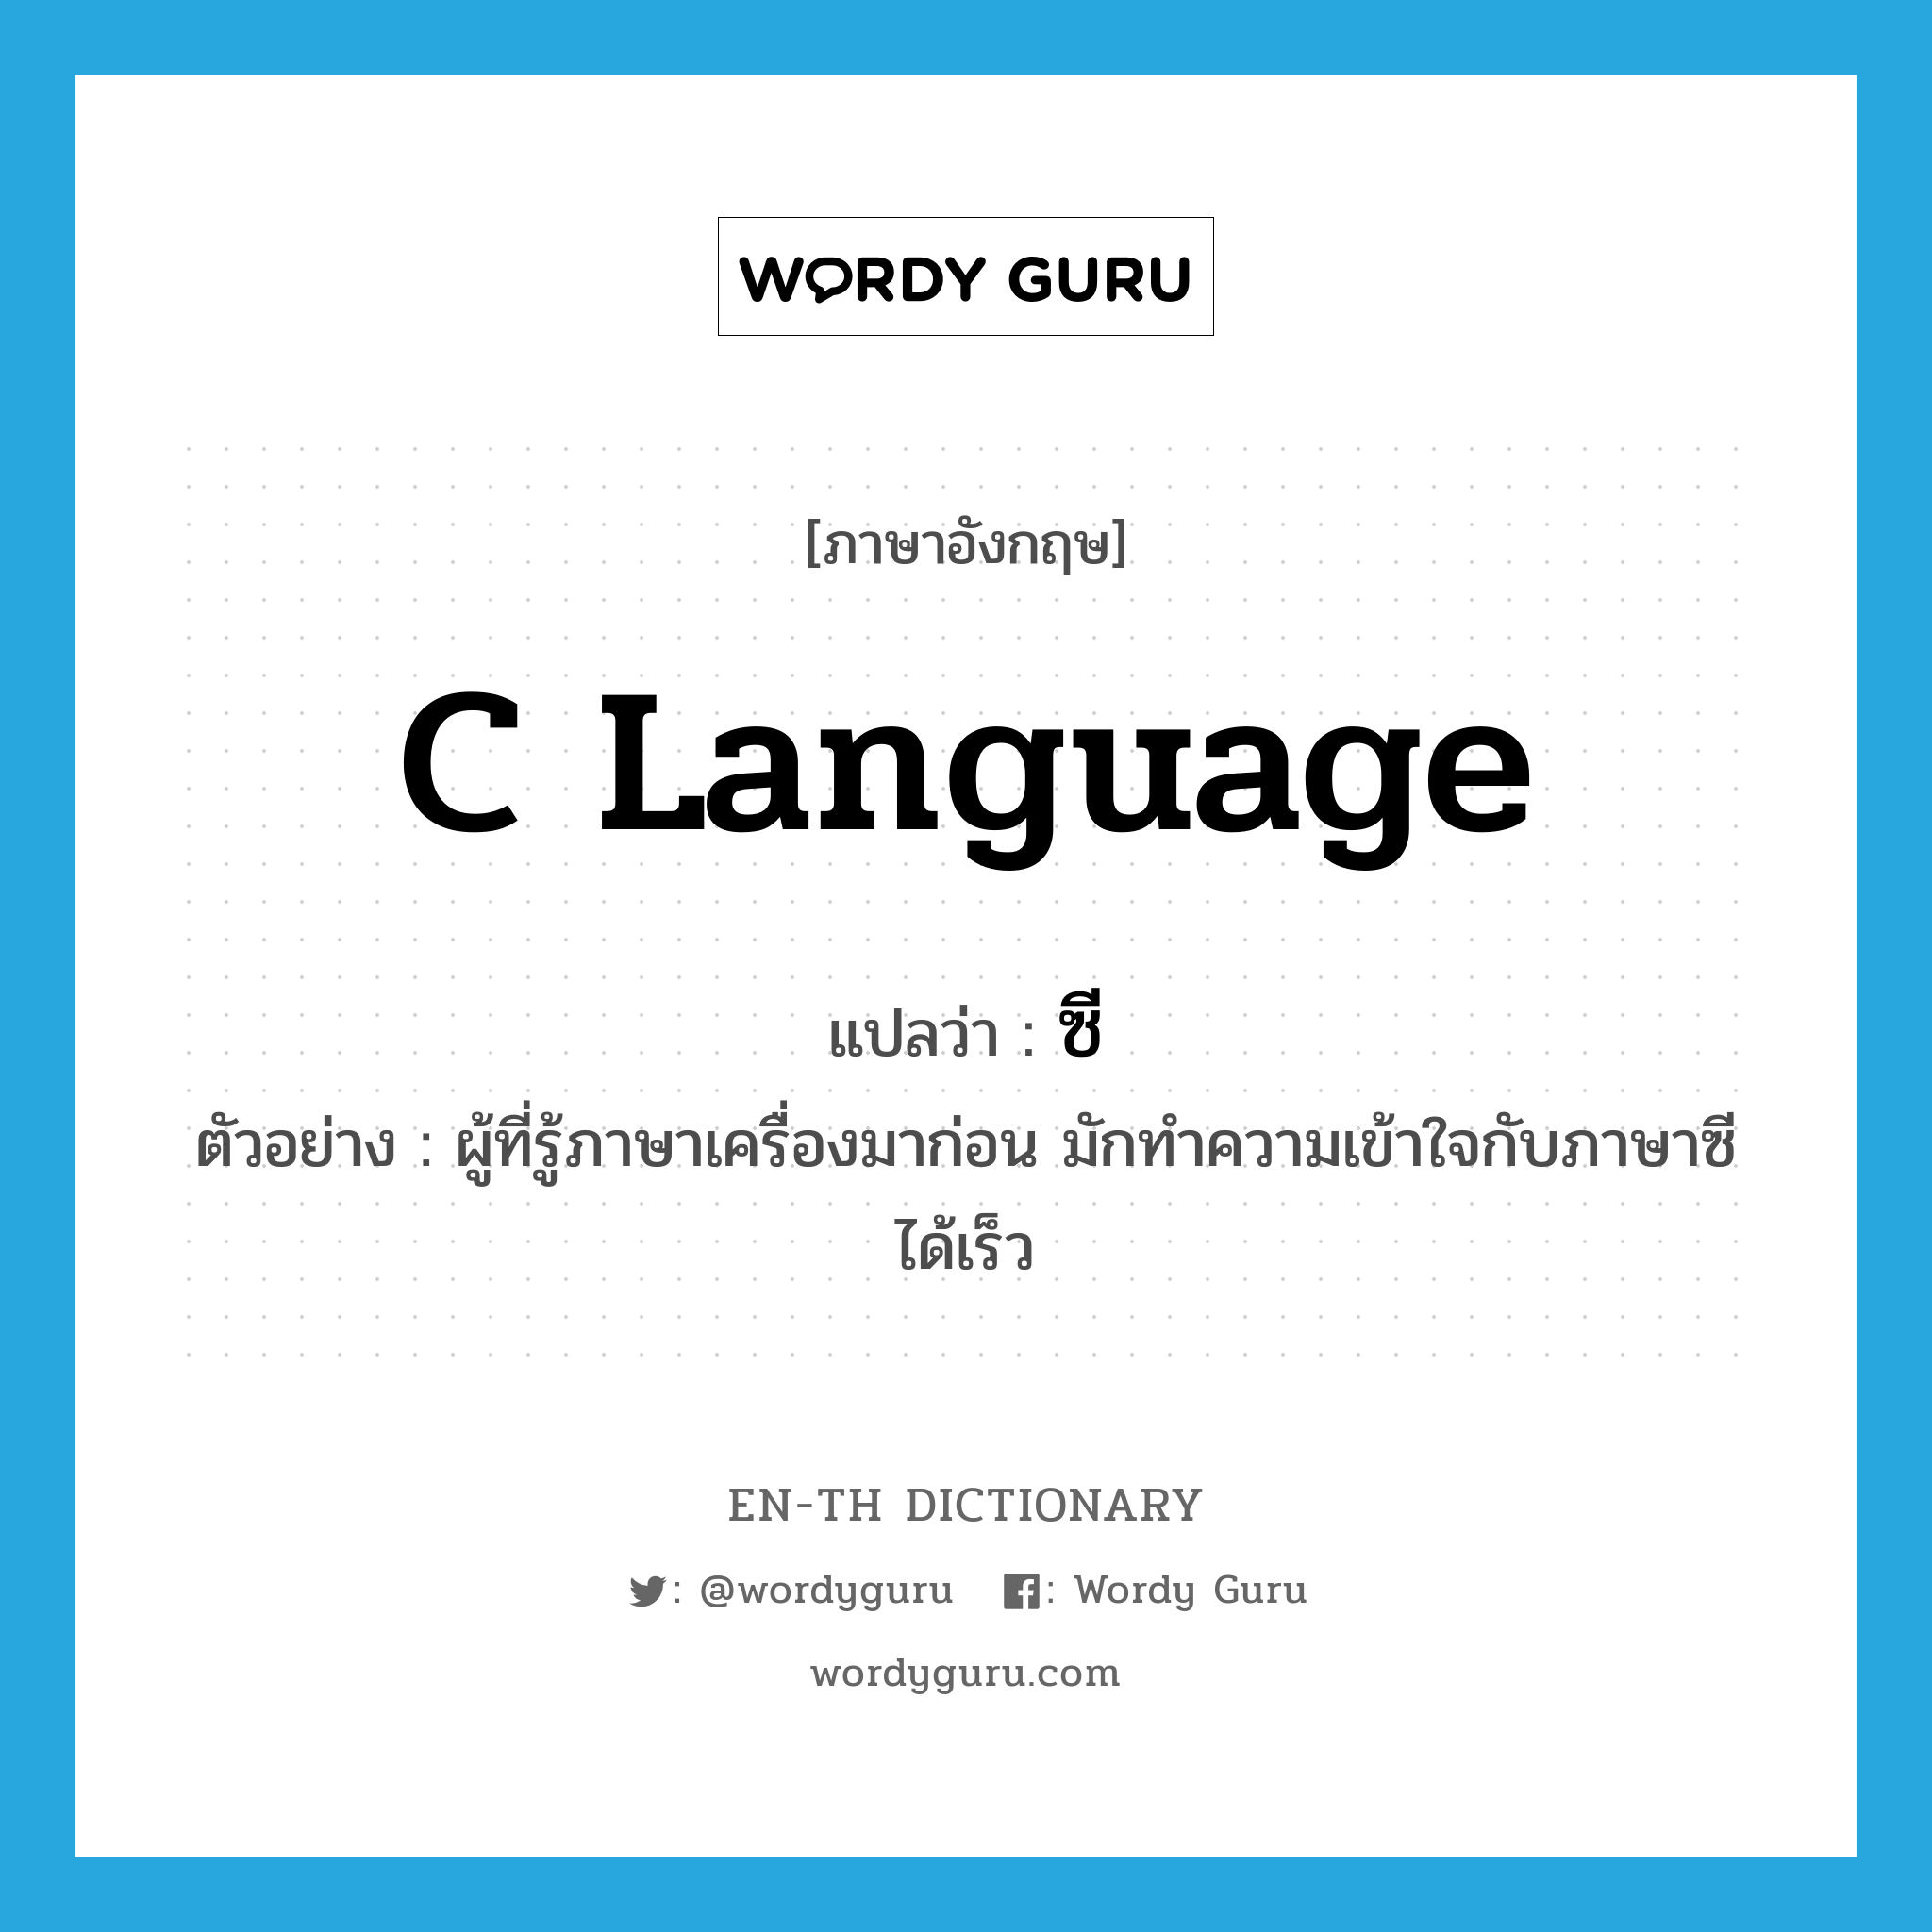 C language แปลว่า?, คำศัพท์ภาษาอังกฤษ C language แปลว่า ซี ประเภท N ตัวอย่าง ผู้ที่รู้ภาษาเครื่องมาก่อน มักทำความเข้าใจกับภาษาซีได้เร็ว หมวด N